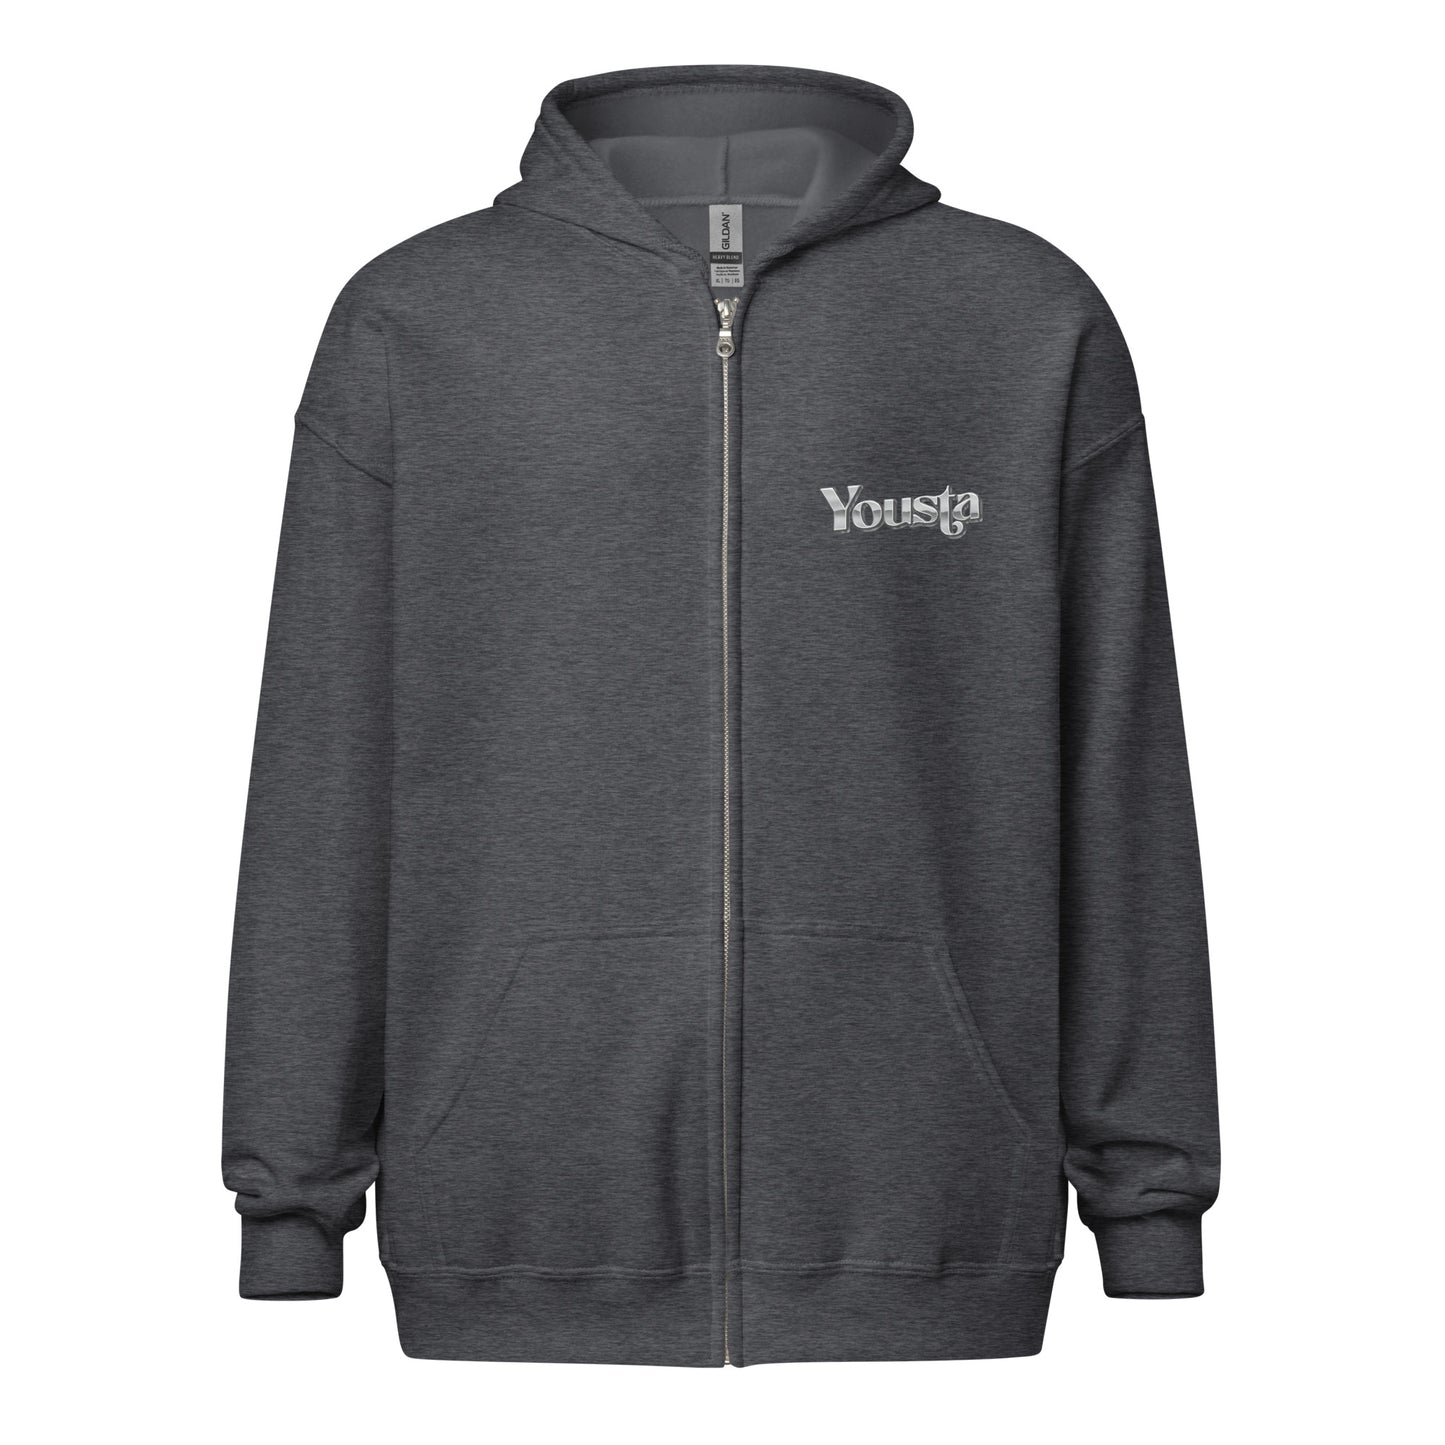 Adrian Van Graphic Unisex heavy blend zip hoodie